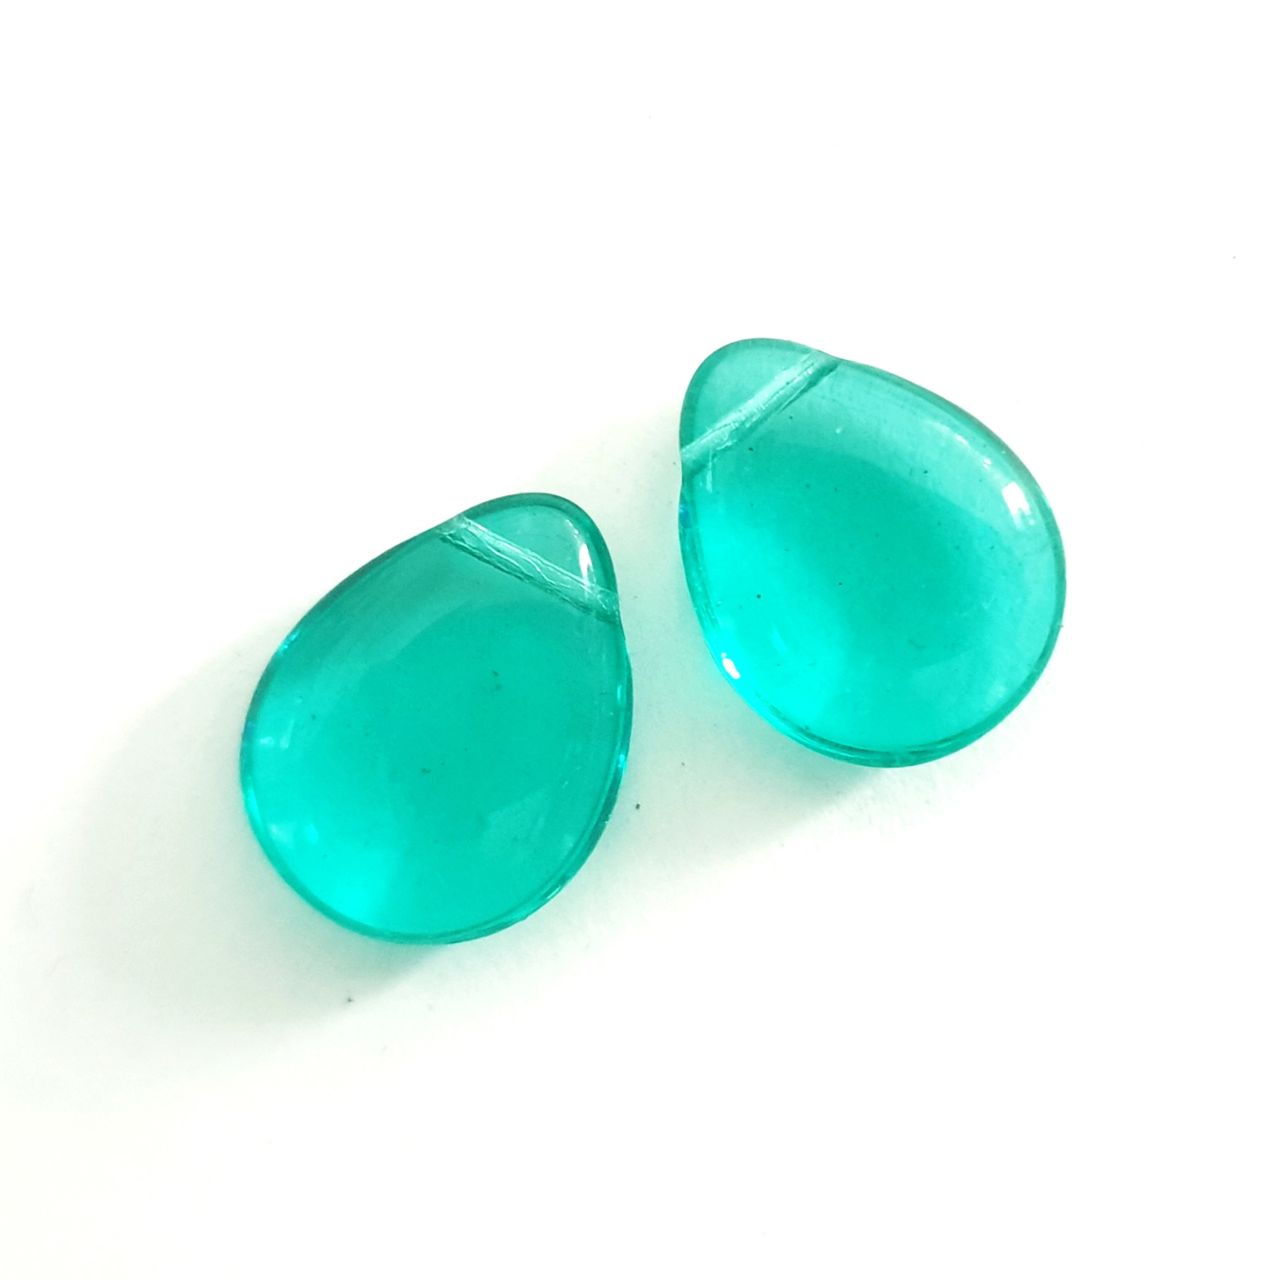 Drop 12x18mm Teal Transparent Czech Glass Beads